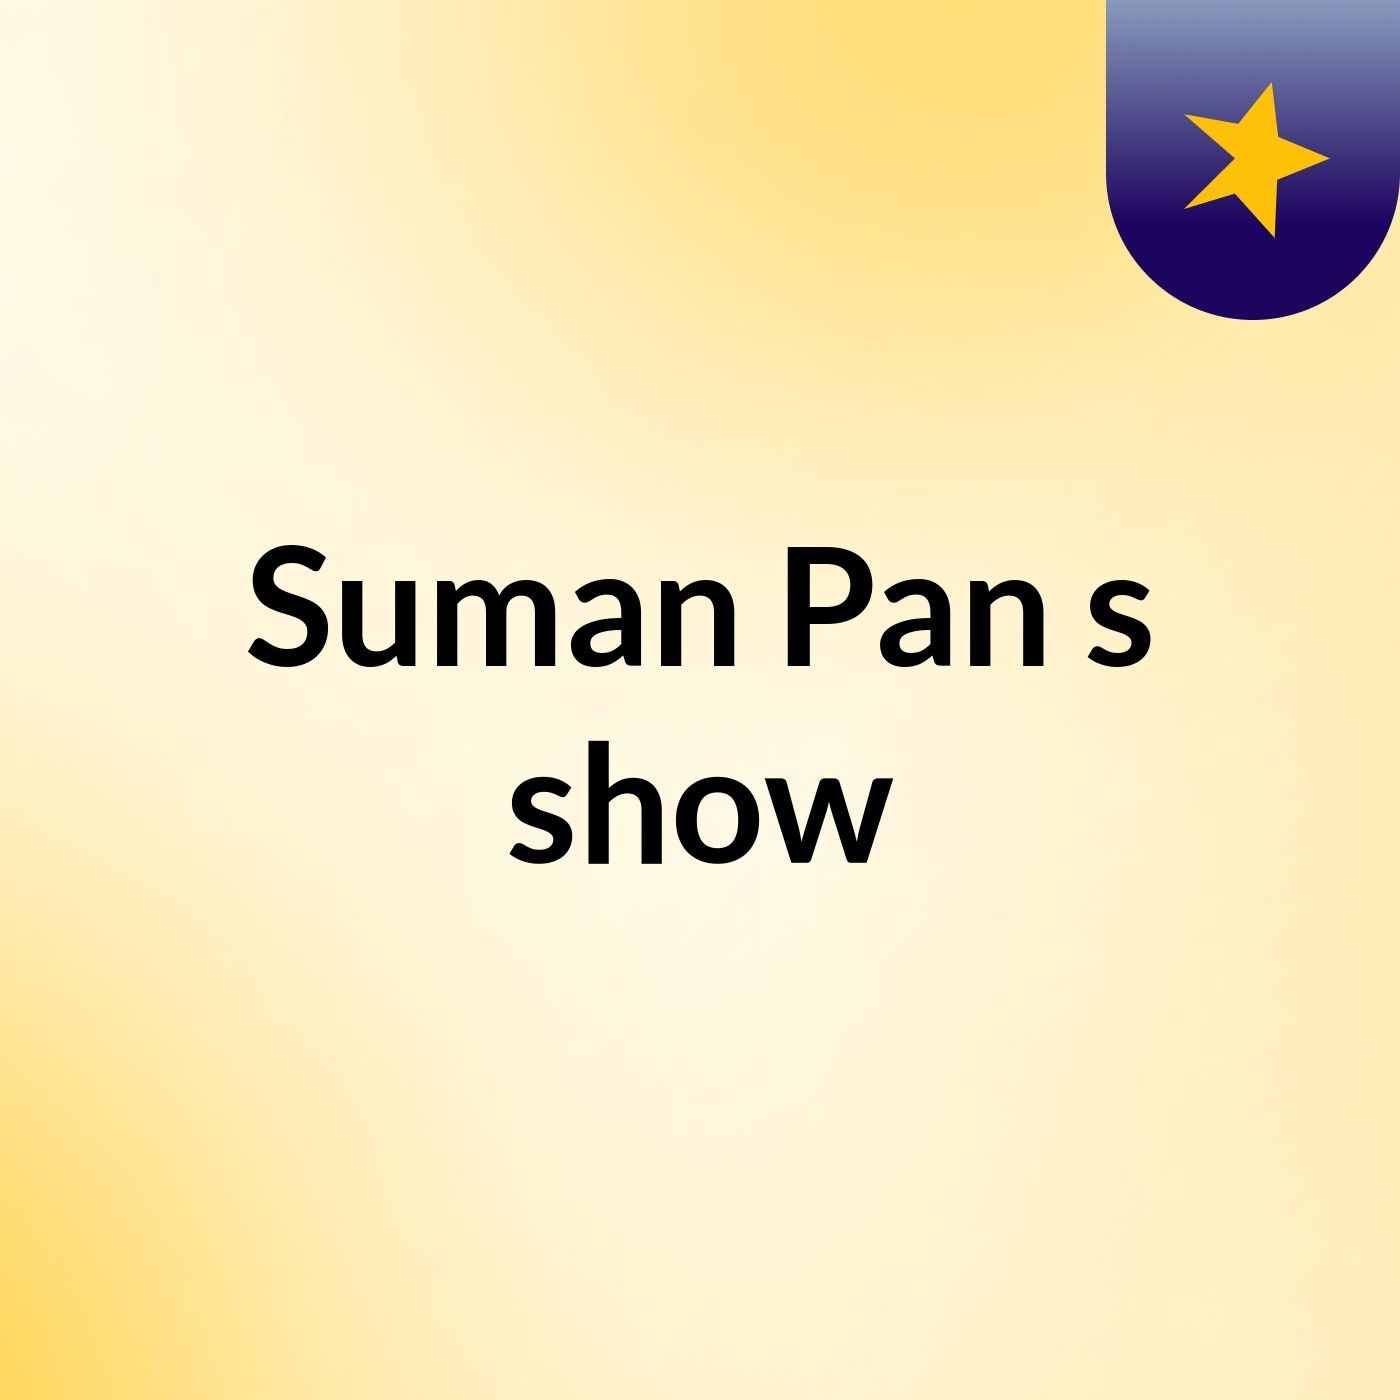 Suman Pan's show